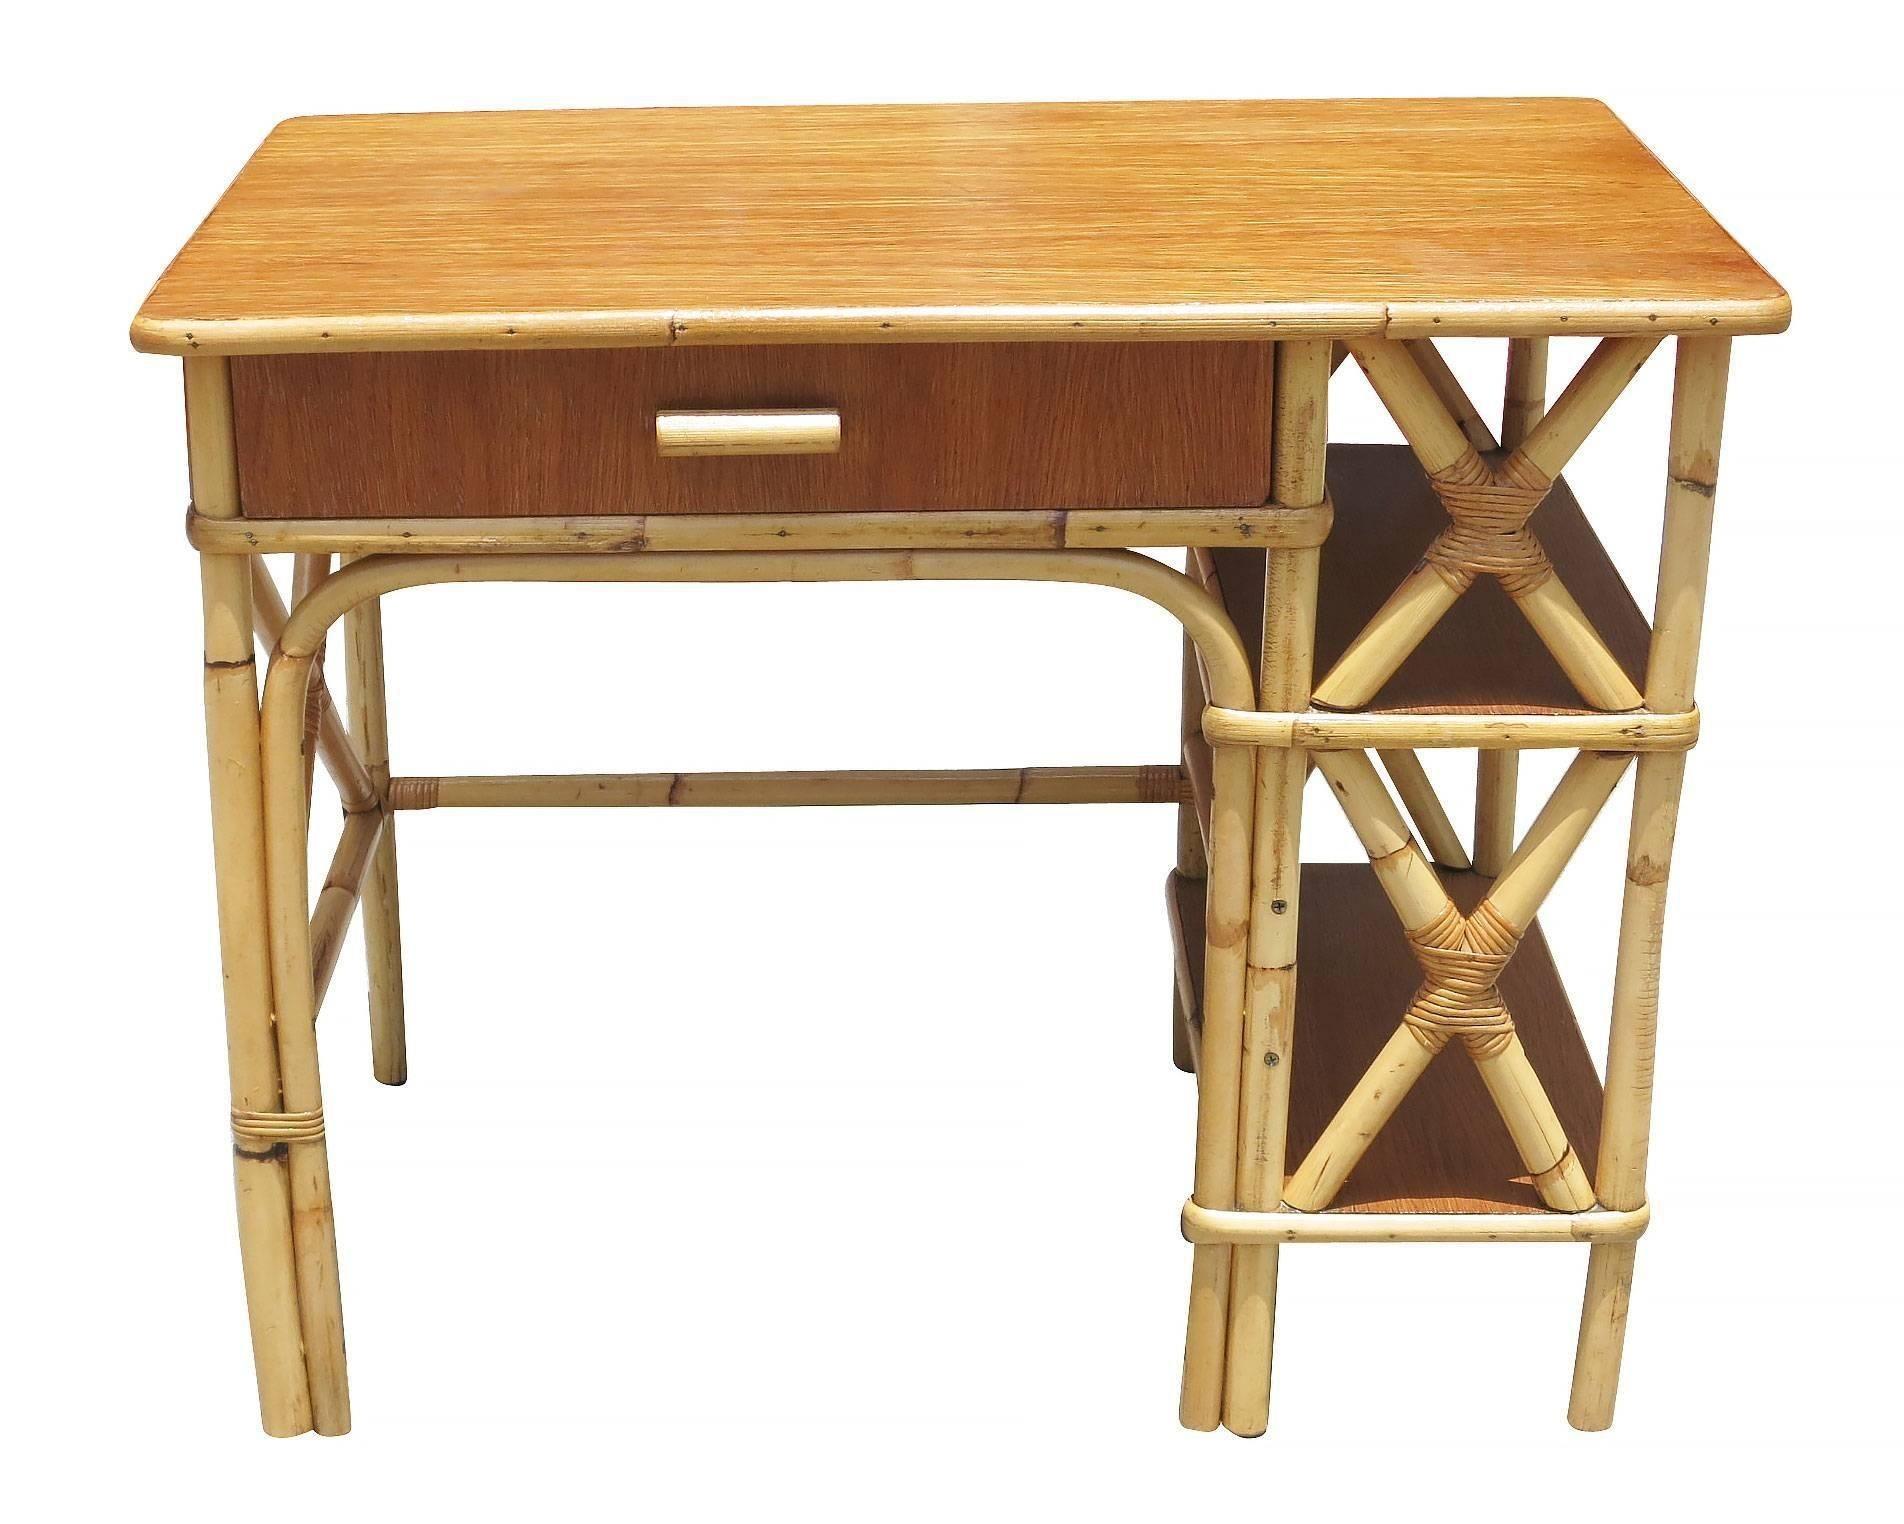 Dieser aus Rattan und Mahagoni gefertigte Schreibtisch aus der Mitte des Jahrhunderts verfügt über eine einzelne Schublade zur Aufbewahrung und ein seitliches Regal mit zwei Ebenen zur weiteren Aufbewahrung.

Der Schreibtisch misst: 29,5